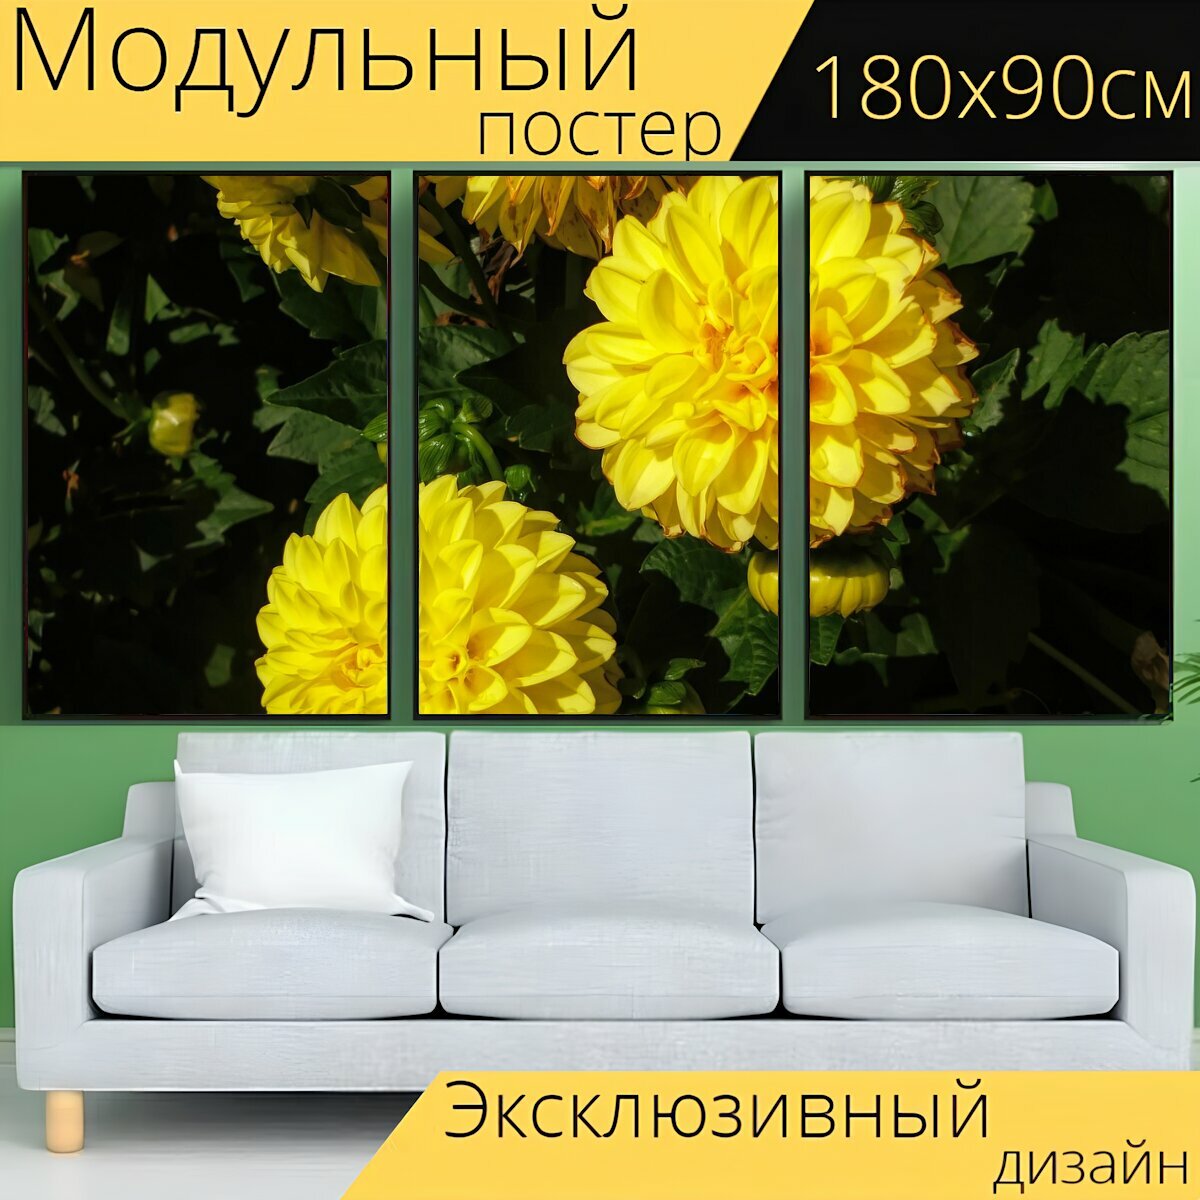 Модульный постер "Флора, цветы, желтый" 180 x 90 см. для интерьера